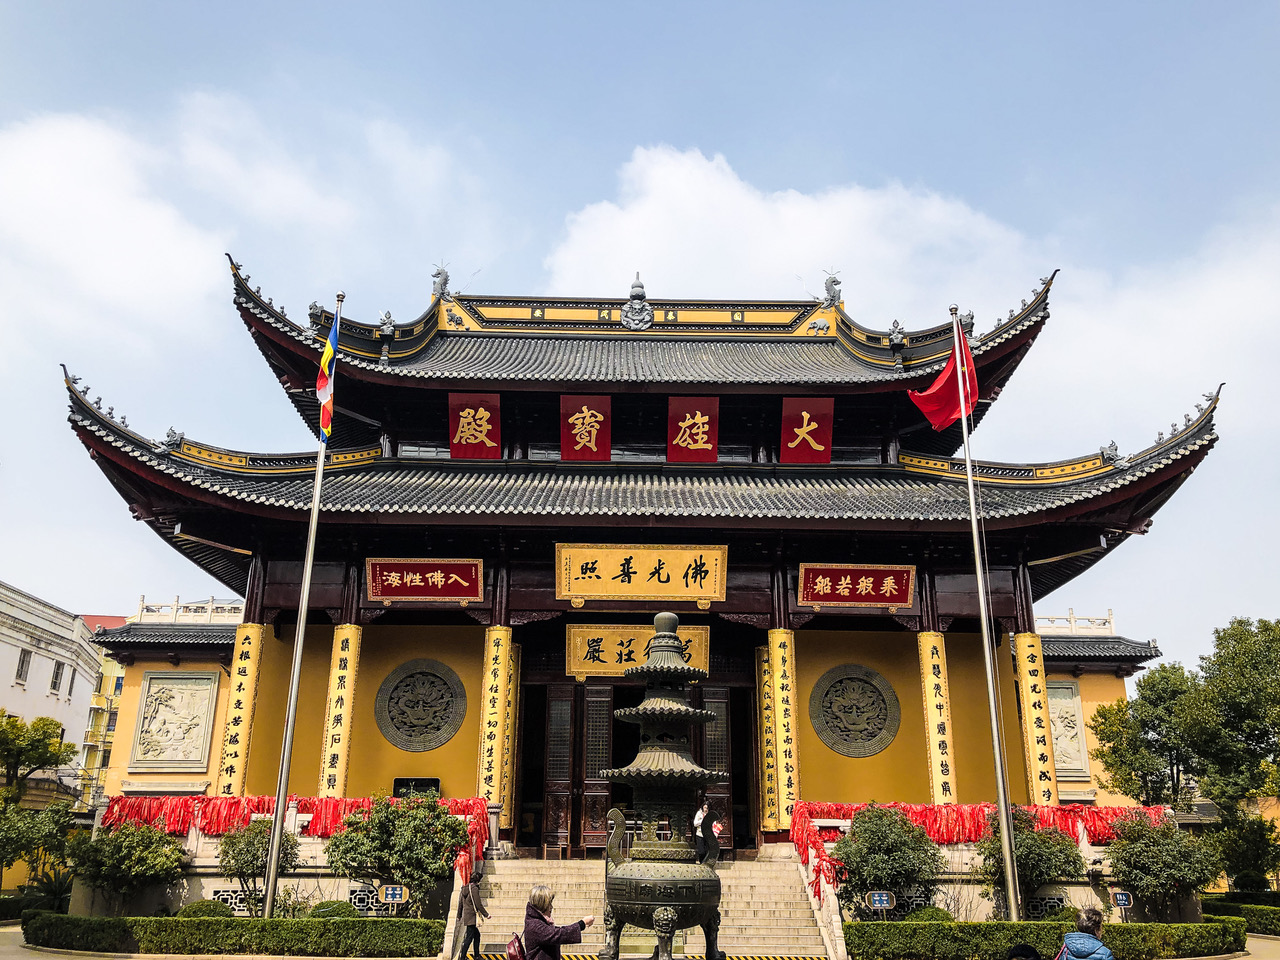 Temple authentique à Shanghai